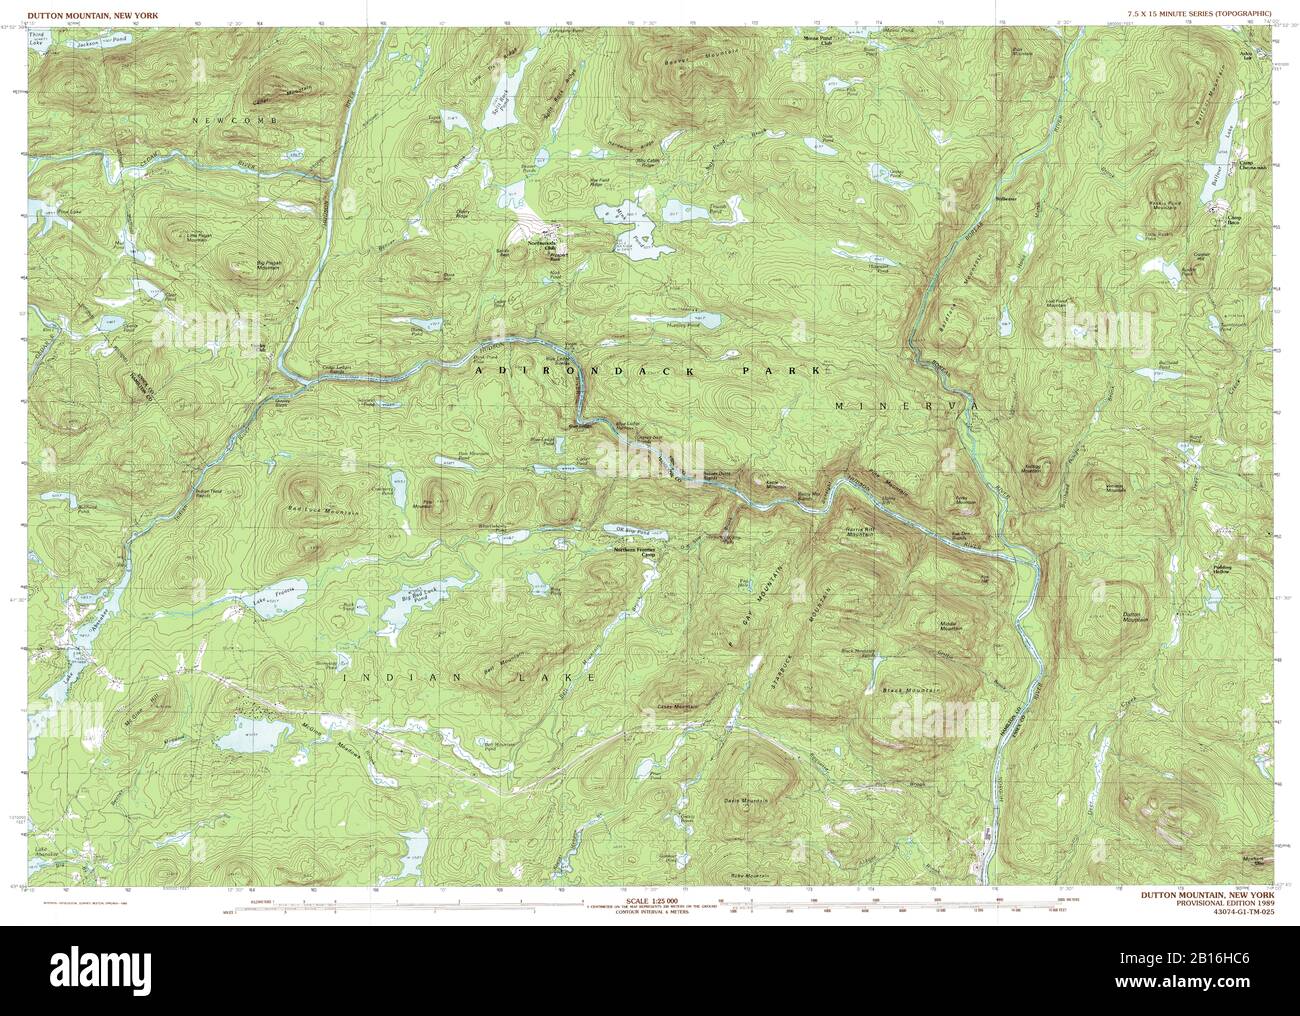 Vue très détaillée de la carte topographique de 1989 pour Dutton Mountain, NY Banque D'Images